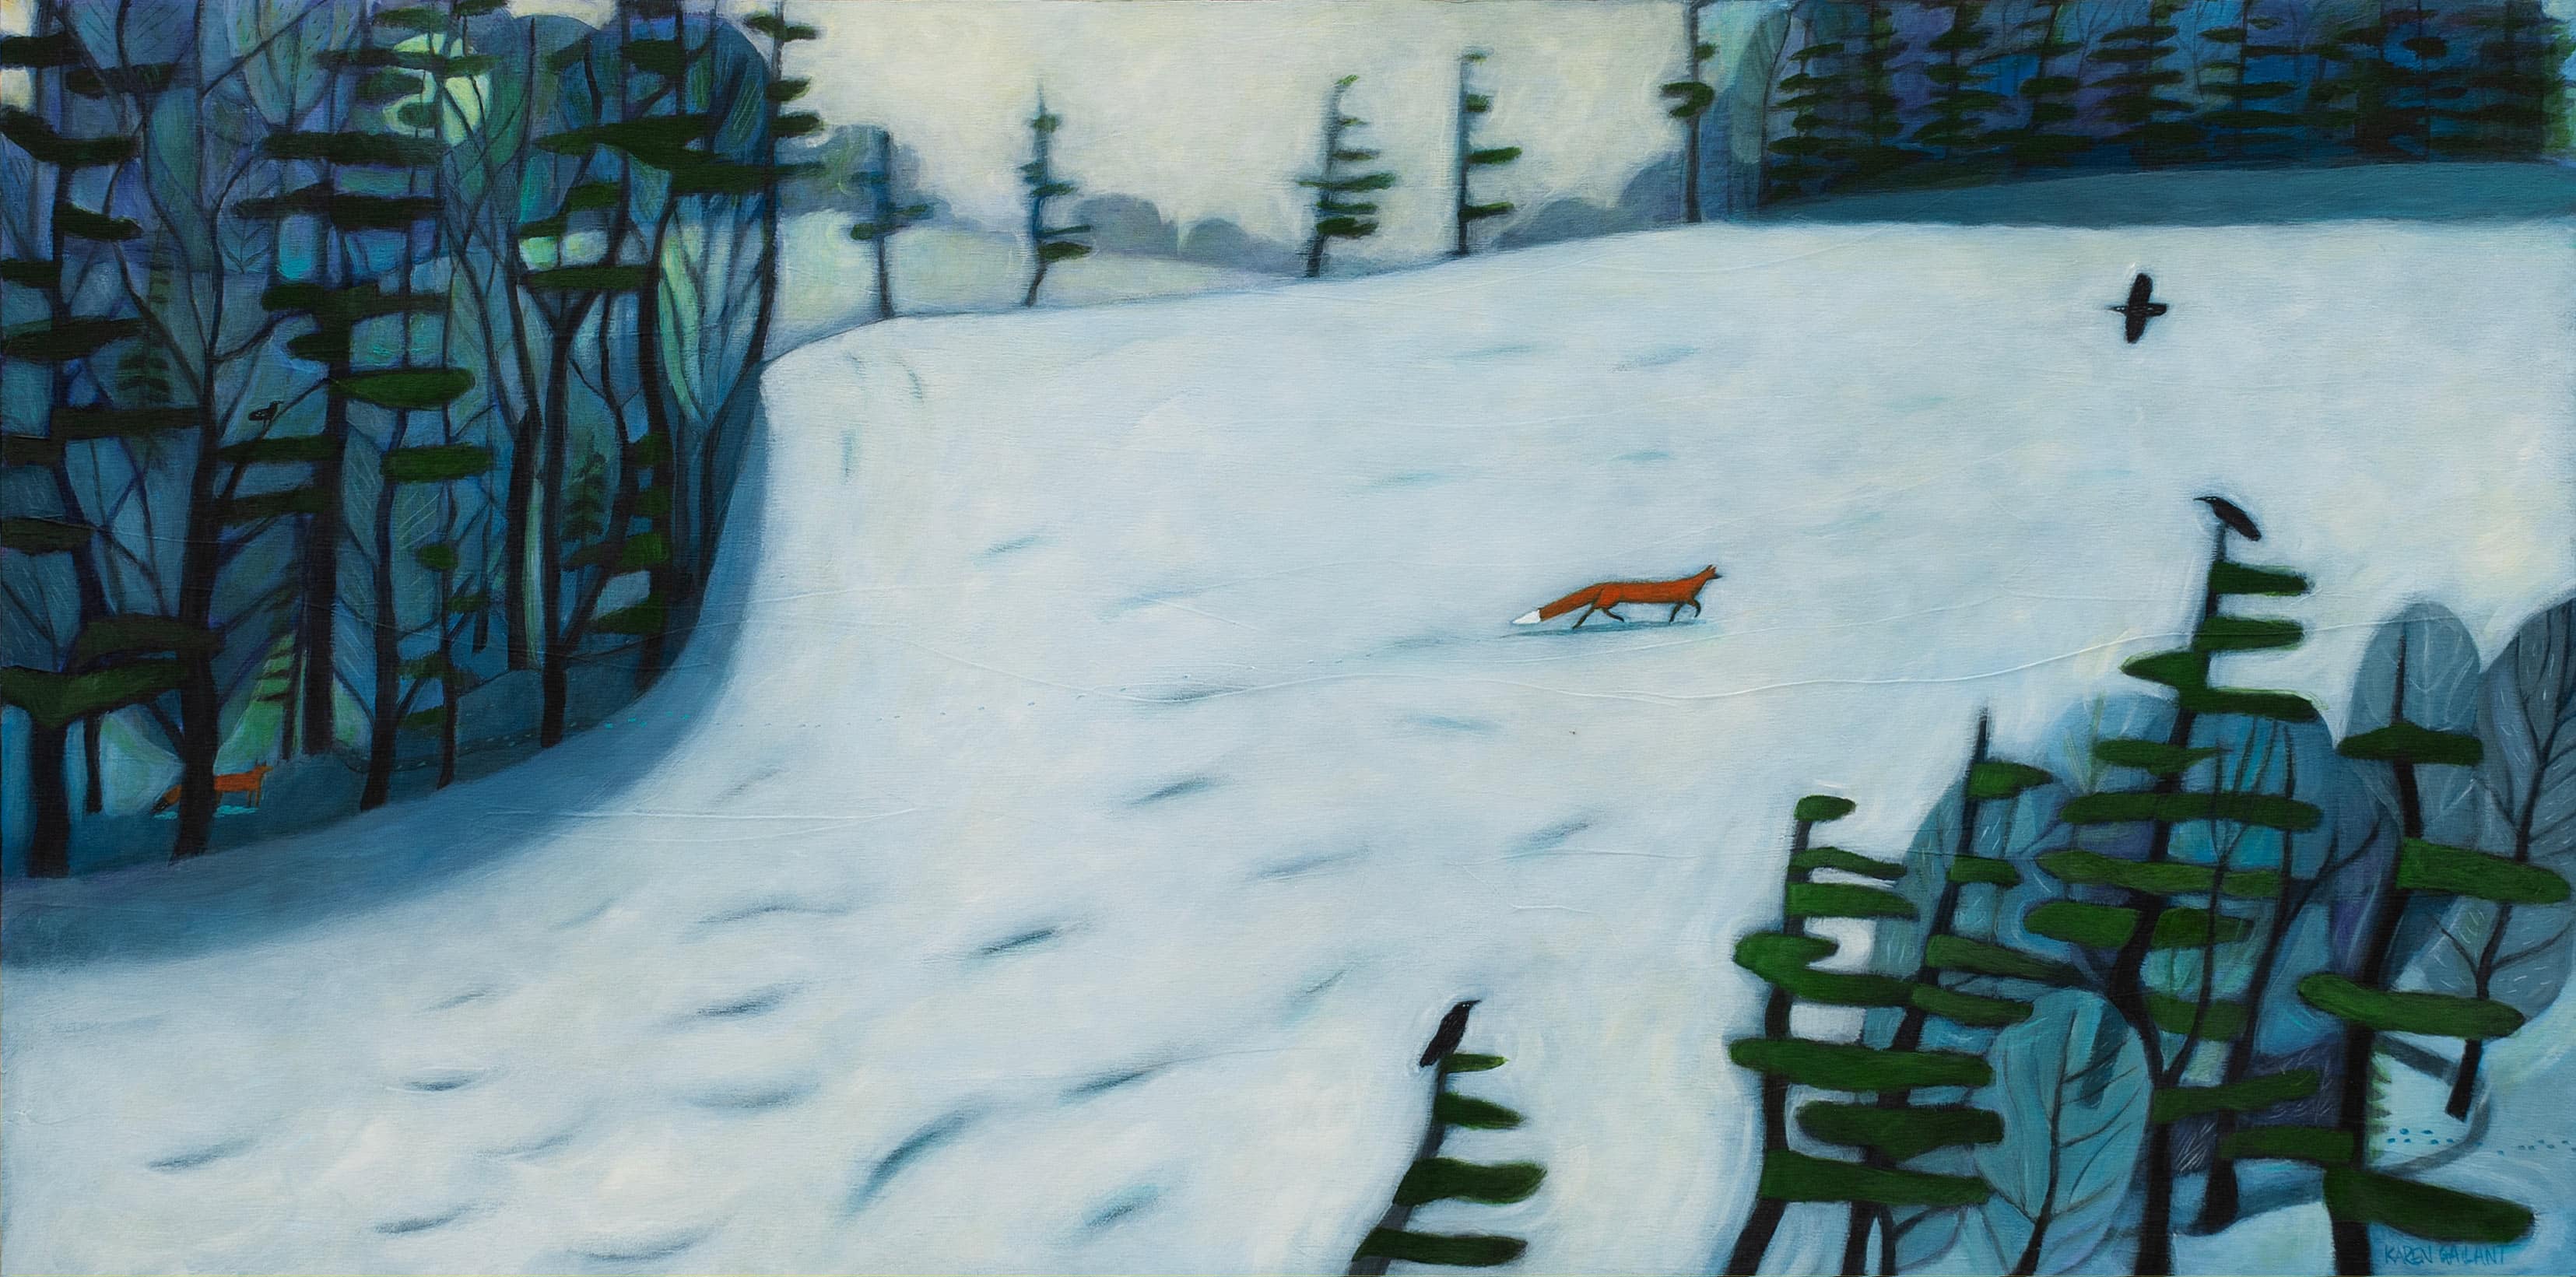 Fox in winter crossing back field